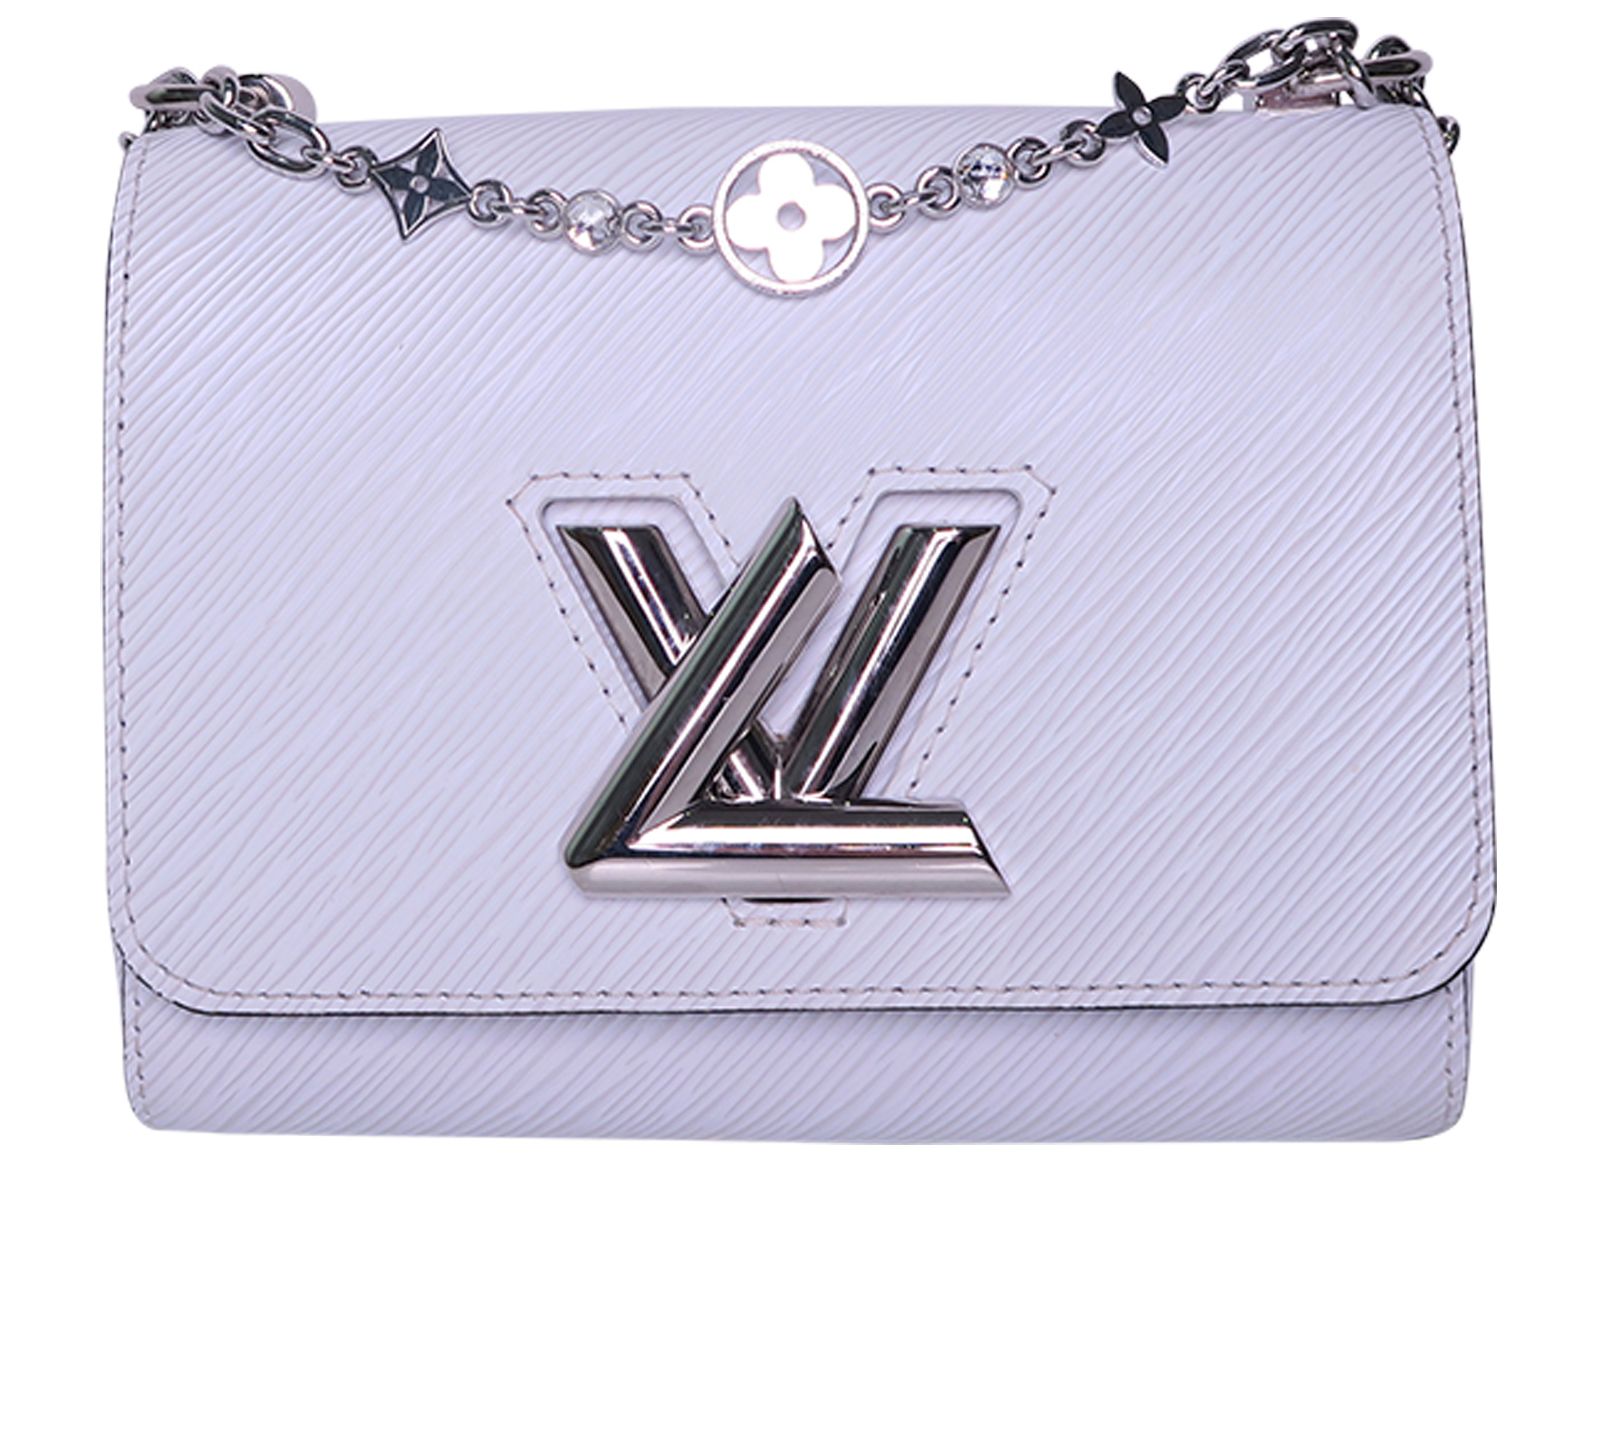 Louis Vuitton Blue EPI Leather Limited Edition Twist Shoulder Bag